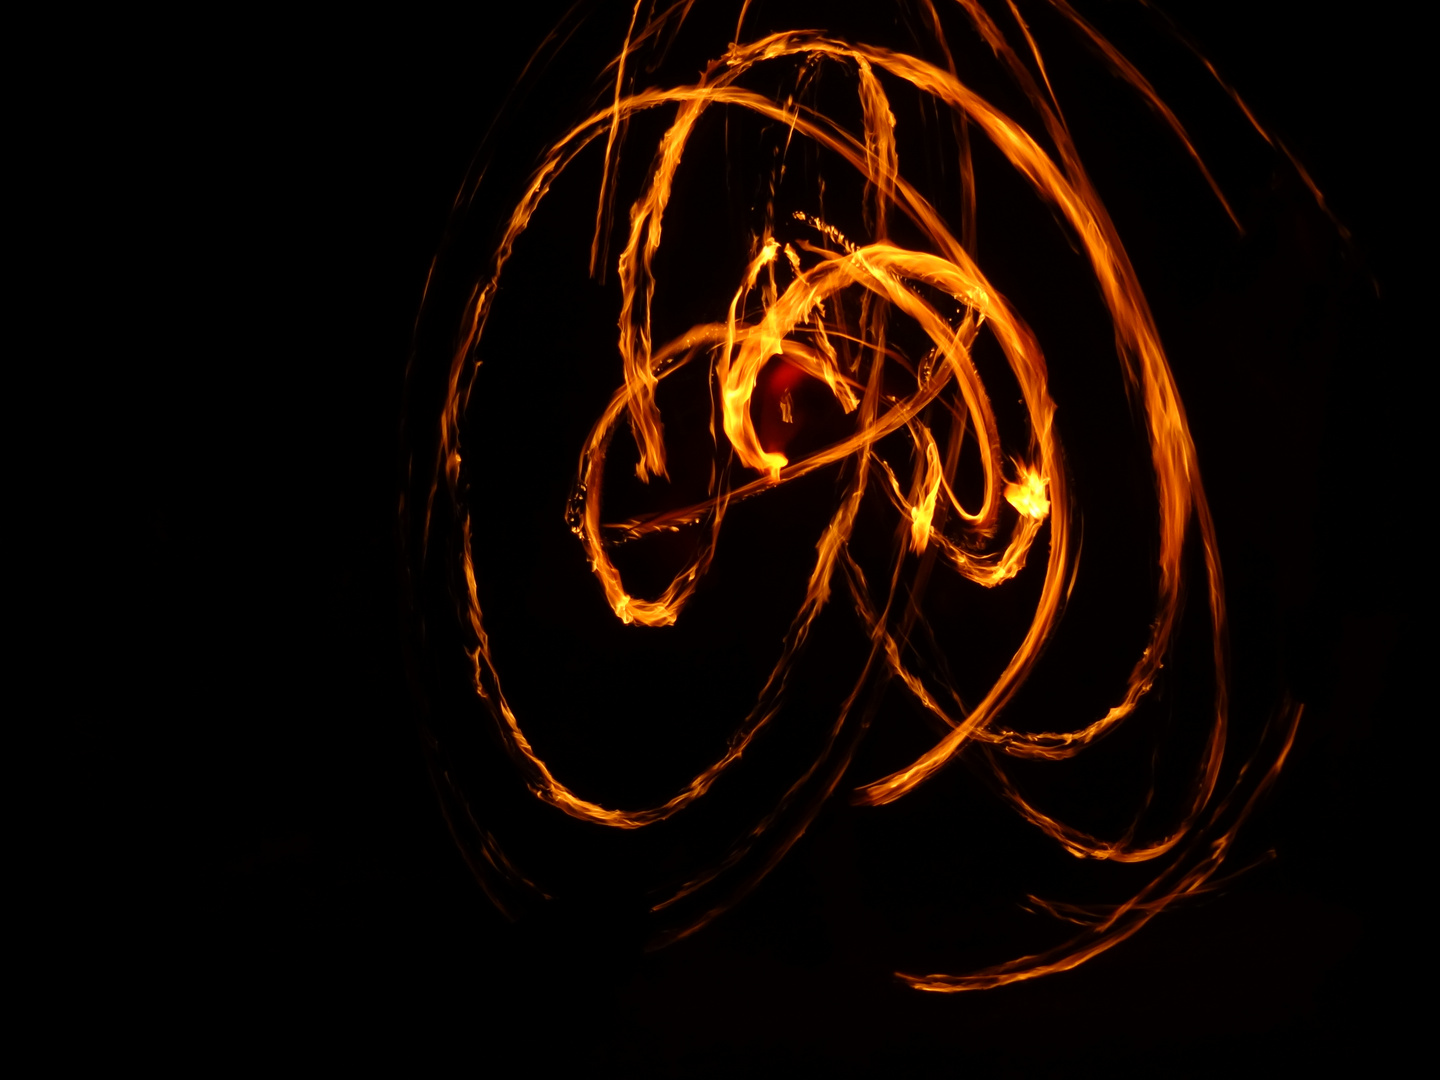 Fire spiral